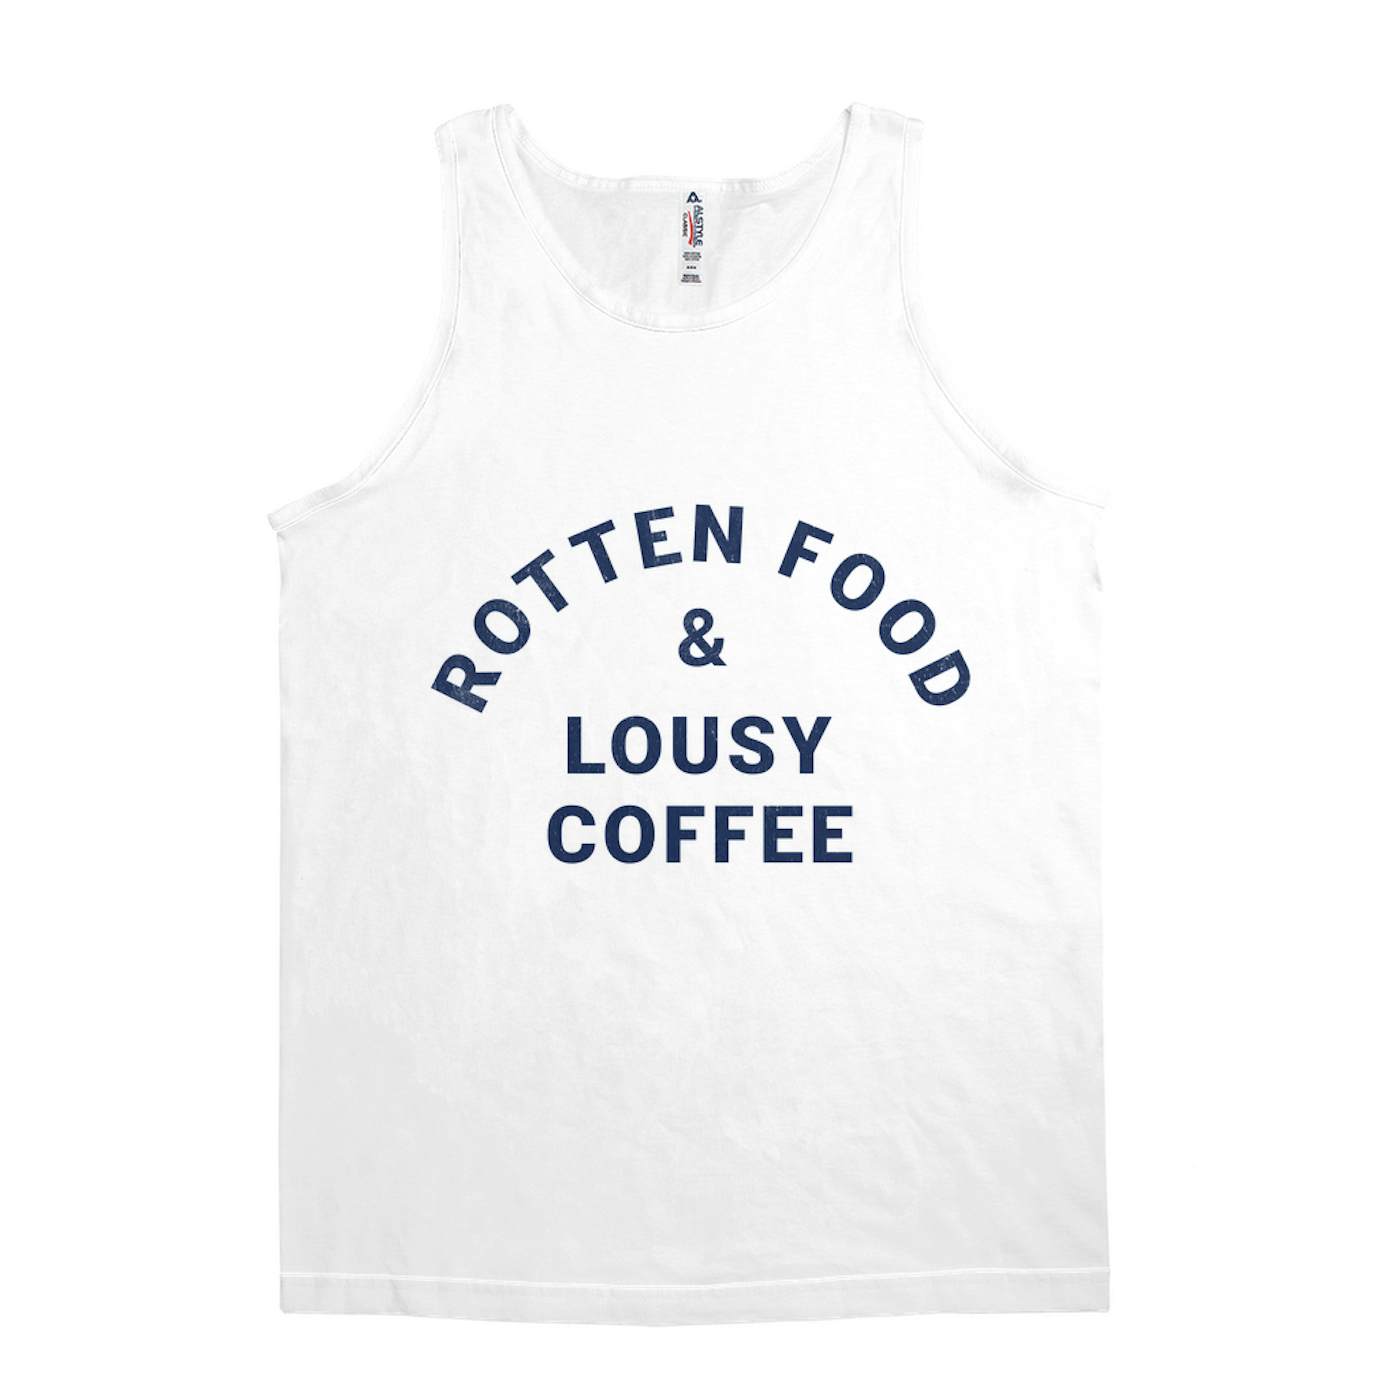 Joe Cocker Unisex Tank Top | Rotten Food & Lousy Coffee Tee worn by Joe Cocker Shirt